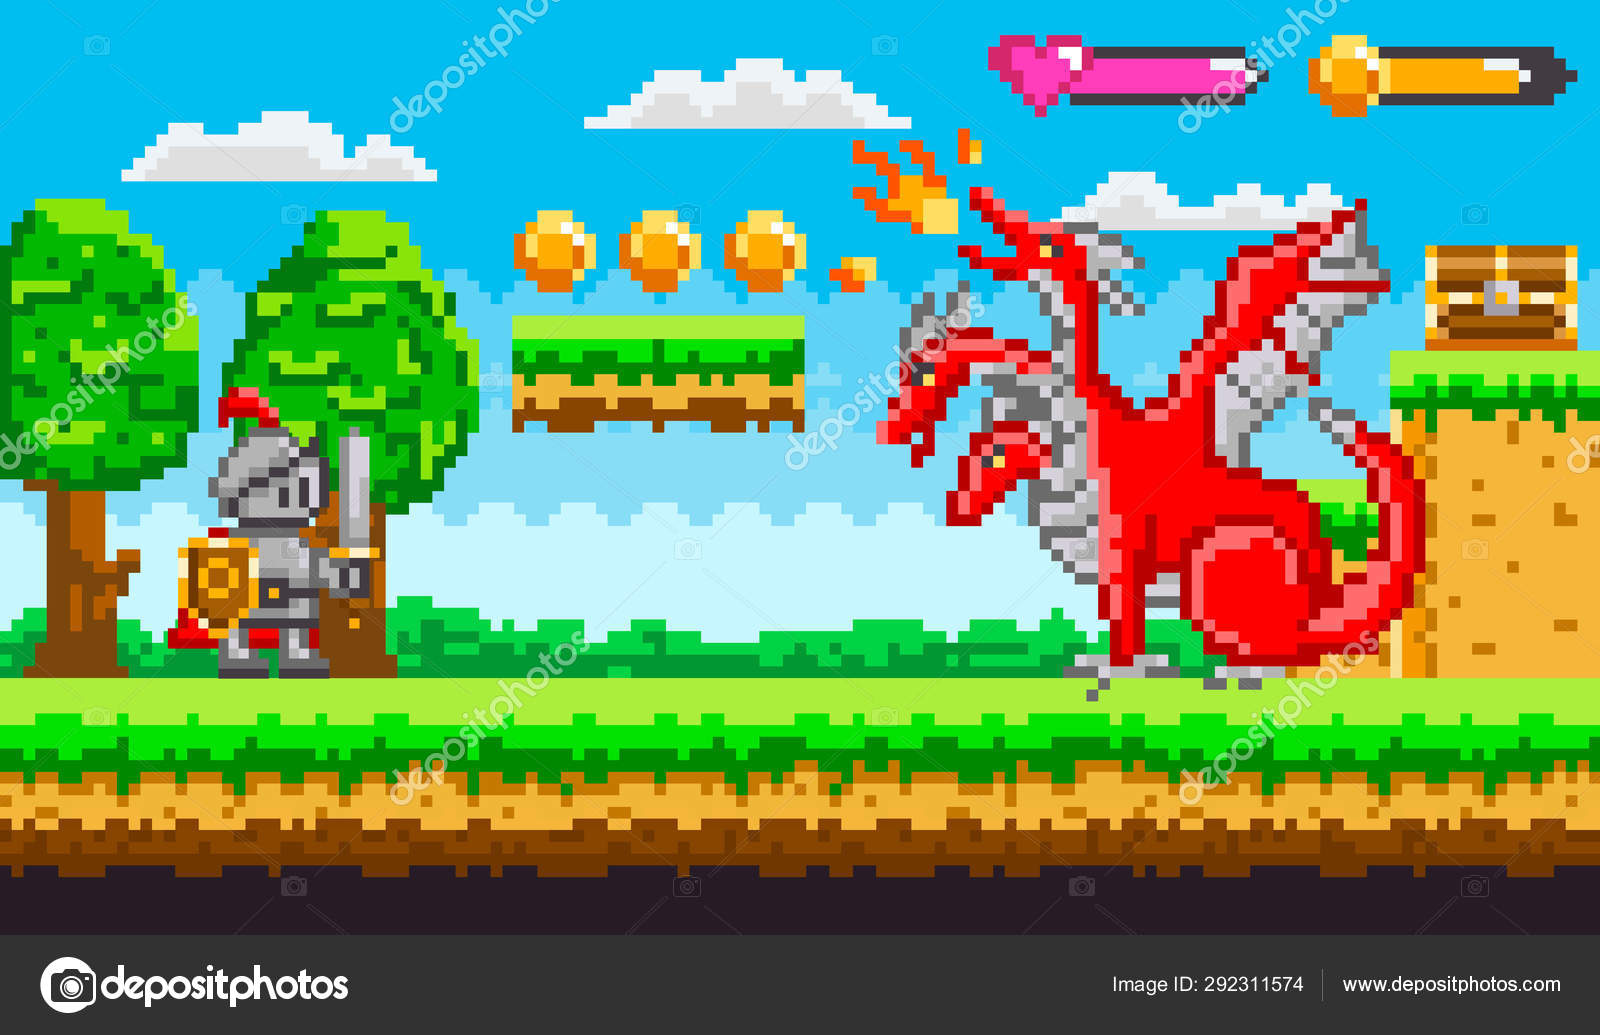 Um jogo de luta nível de jogos de computador retrô pixel art cena